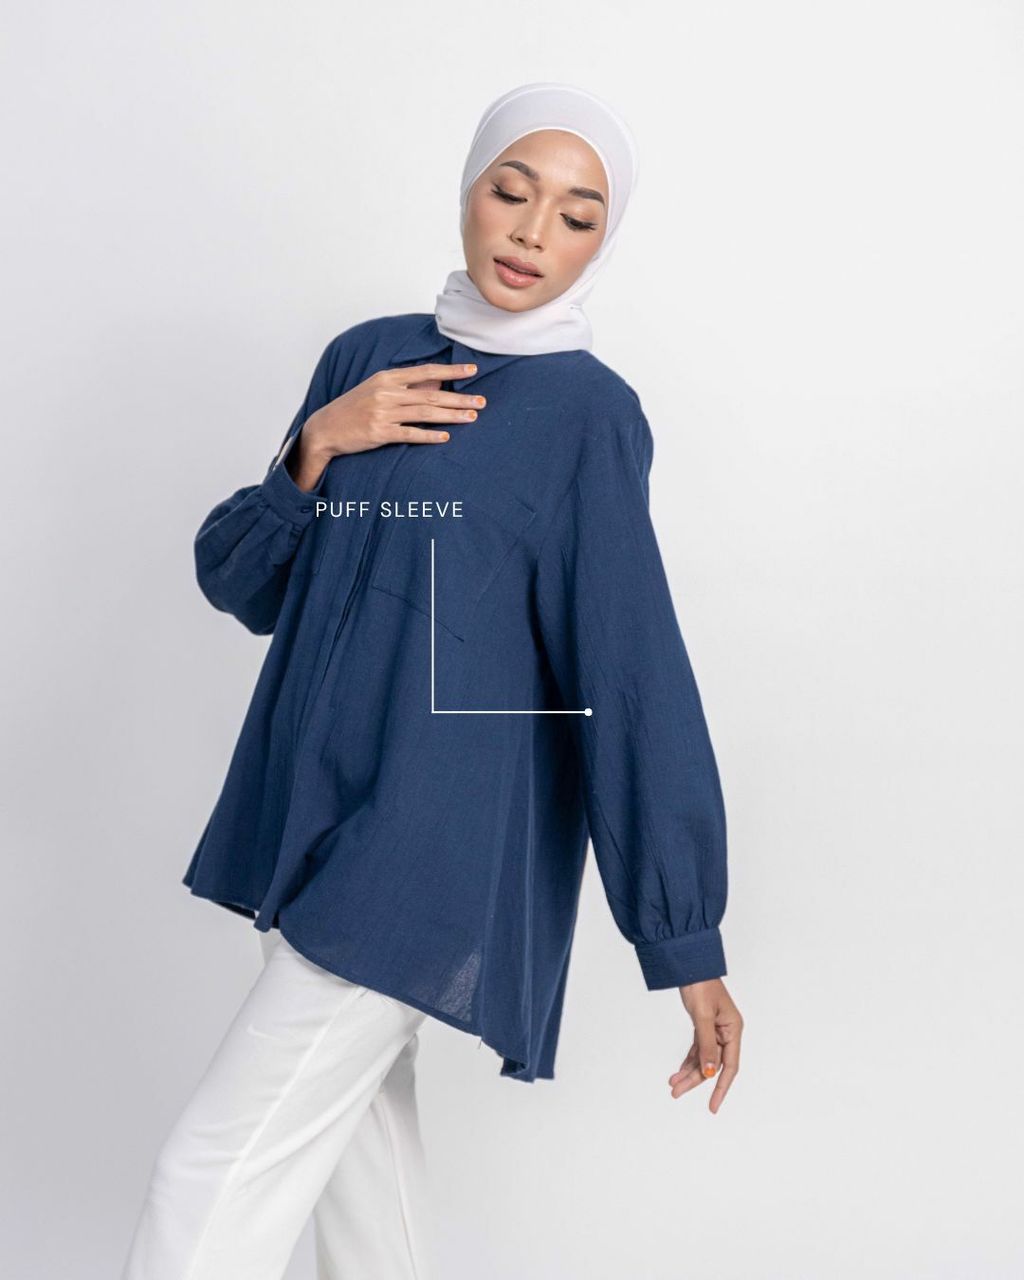 haura-wear-enola-kemeja-lengan panjang-kemeja labuh-baju labuh-tunic-kaftan-midi-dress-blouse-shirt-long-sleeve-baju-muslimah-baju-perempuan-shirt-blouse-baju (5)